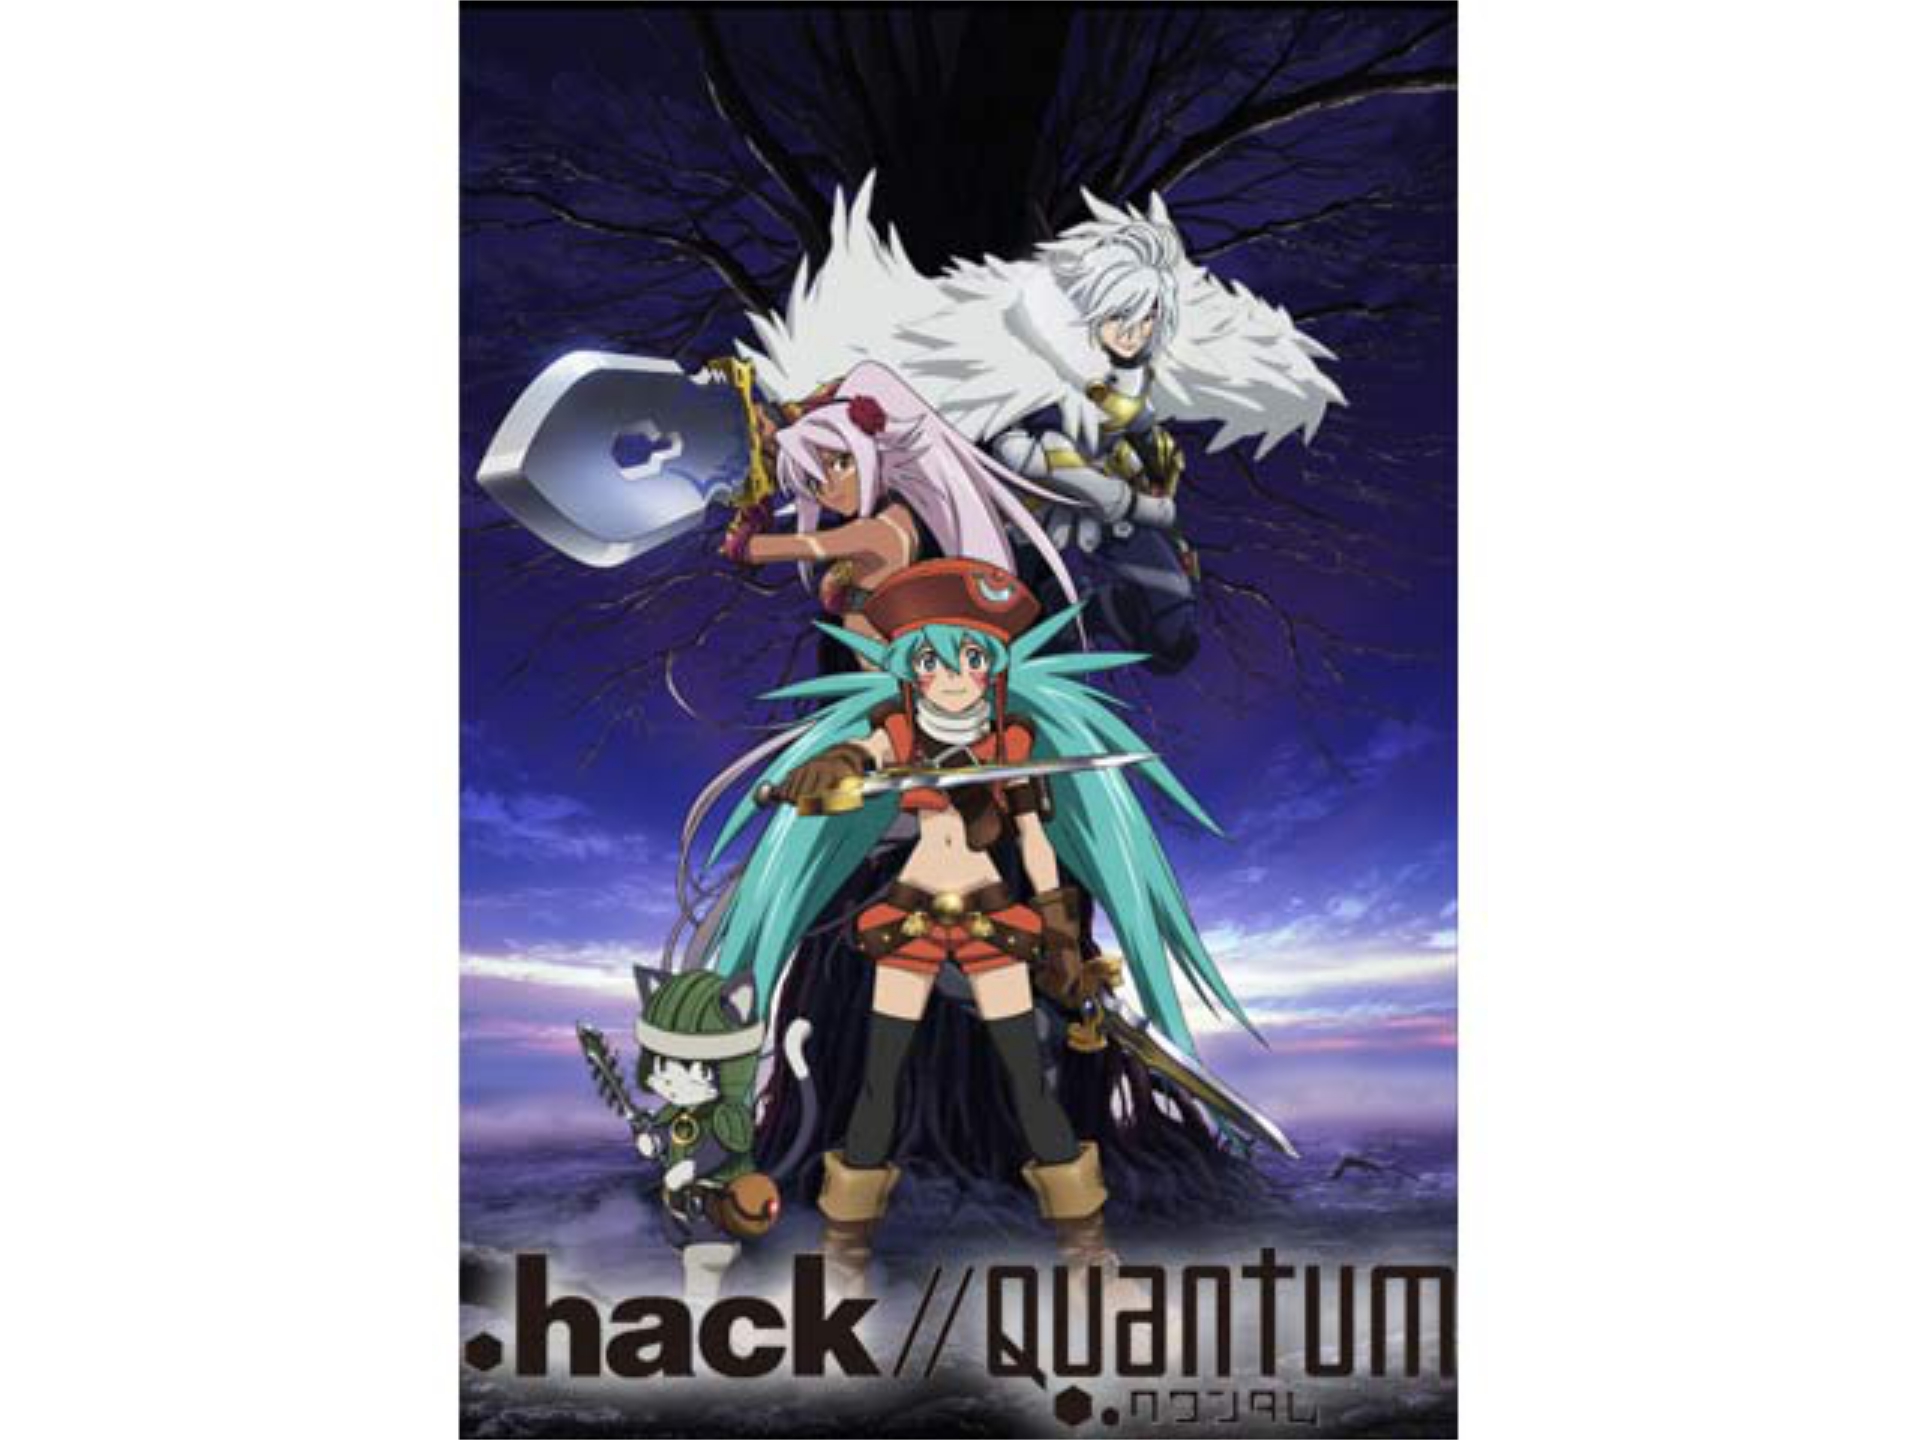 アニメ Hack Quantum の動画 初月無料 動画配信サービスのビデオマーケット